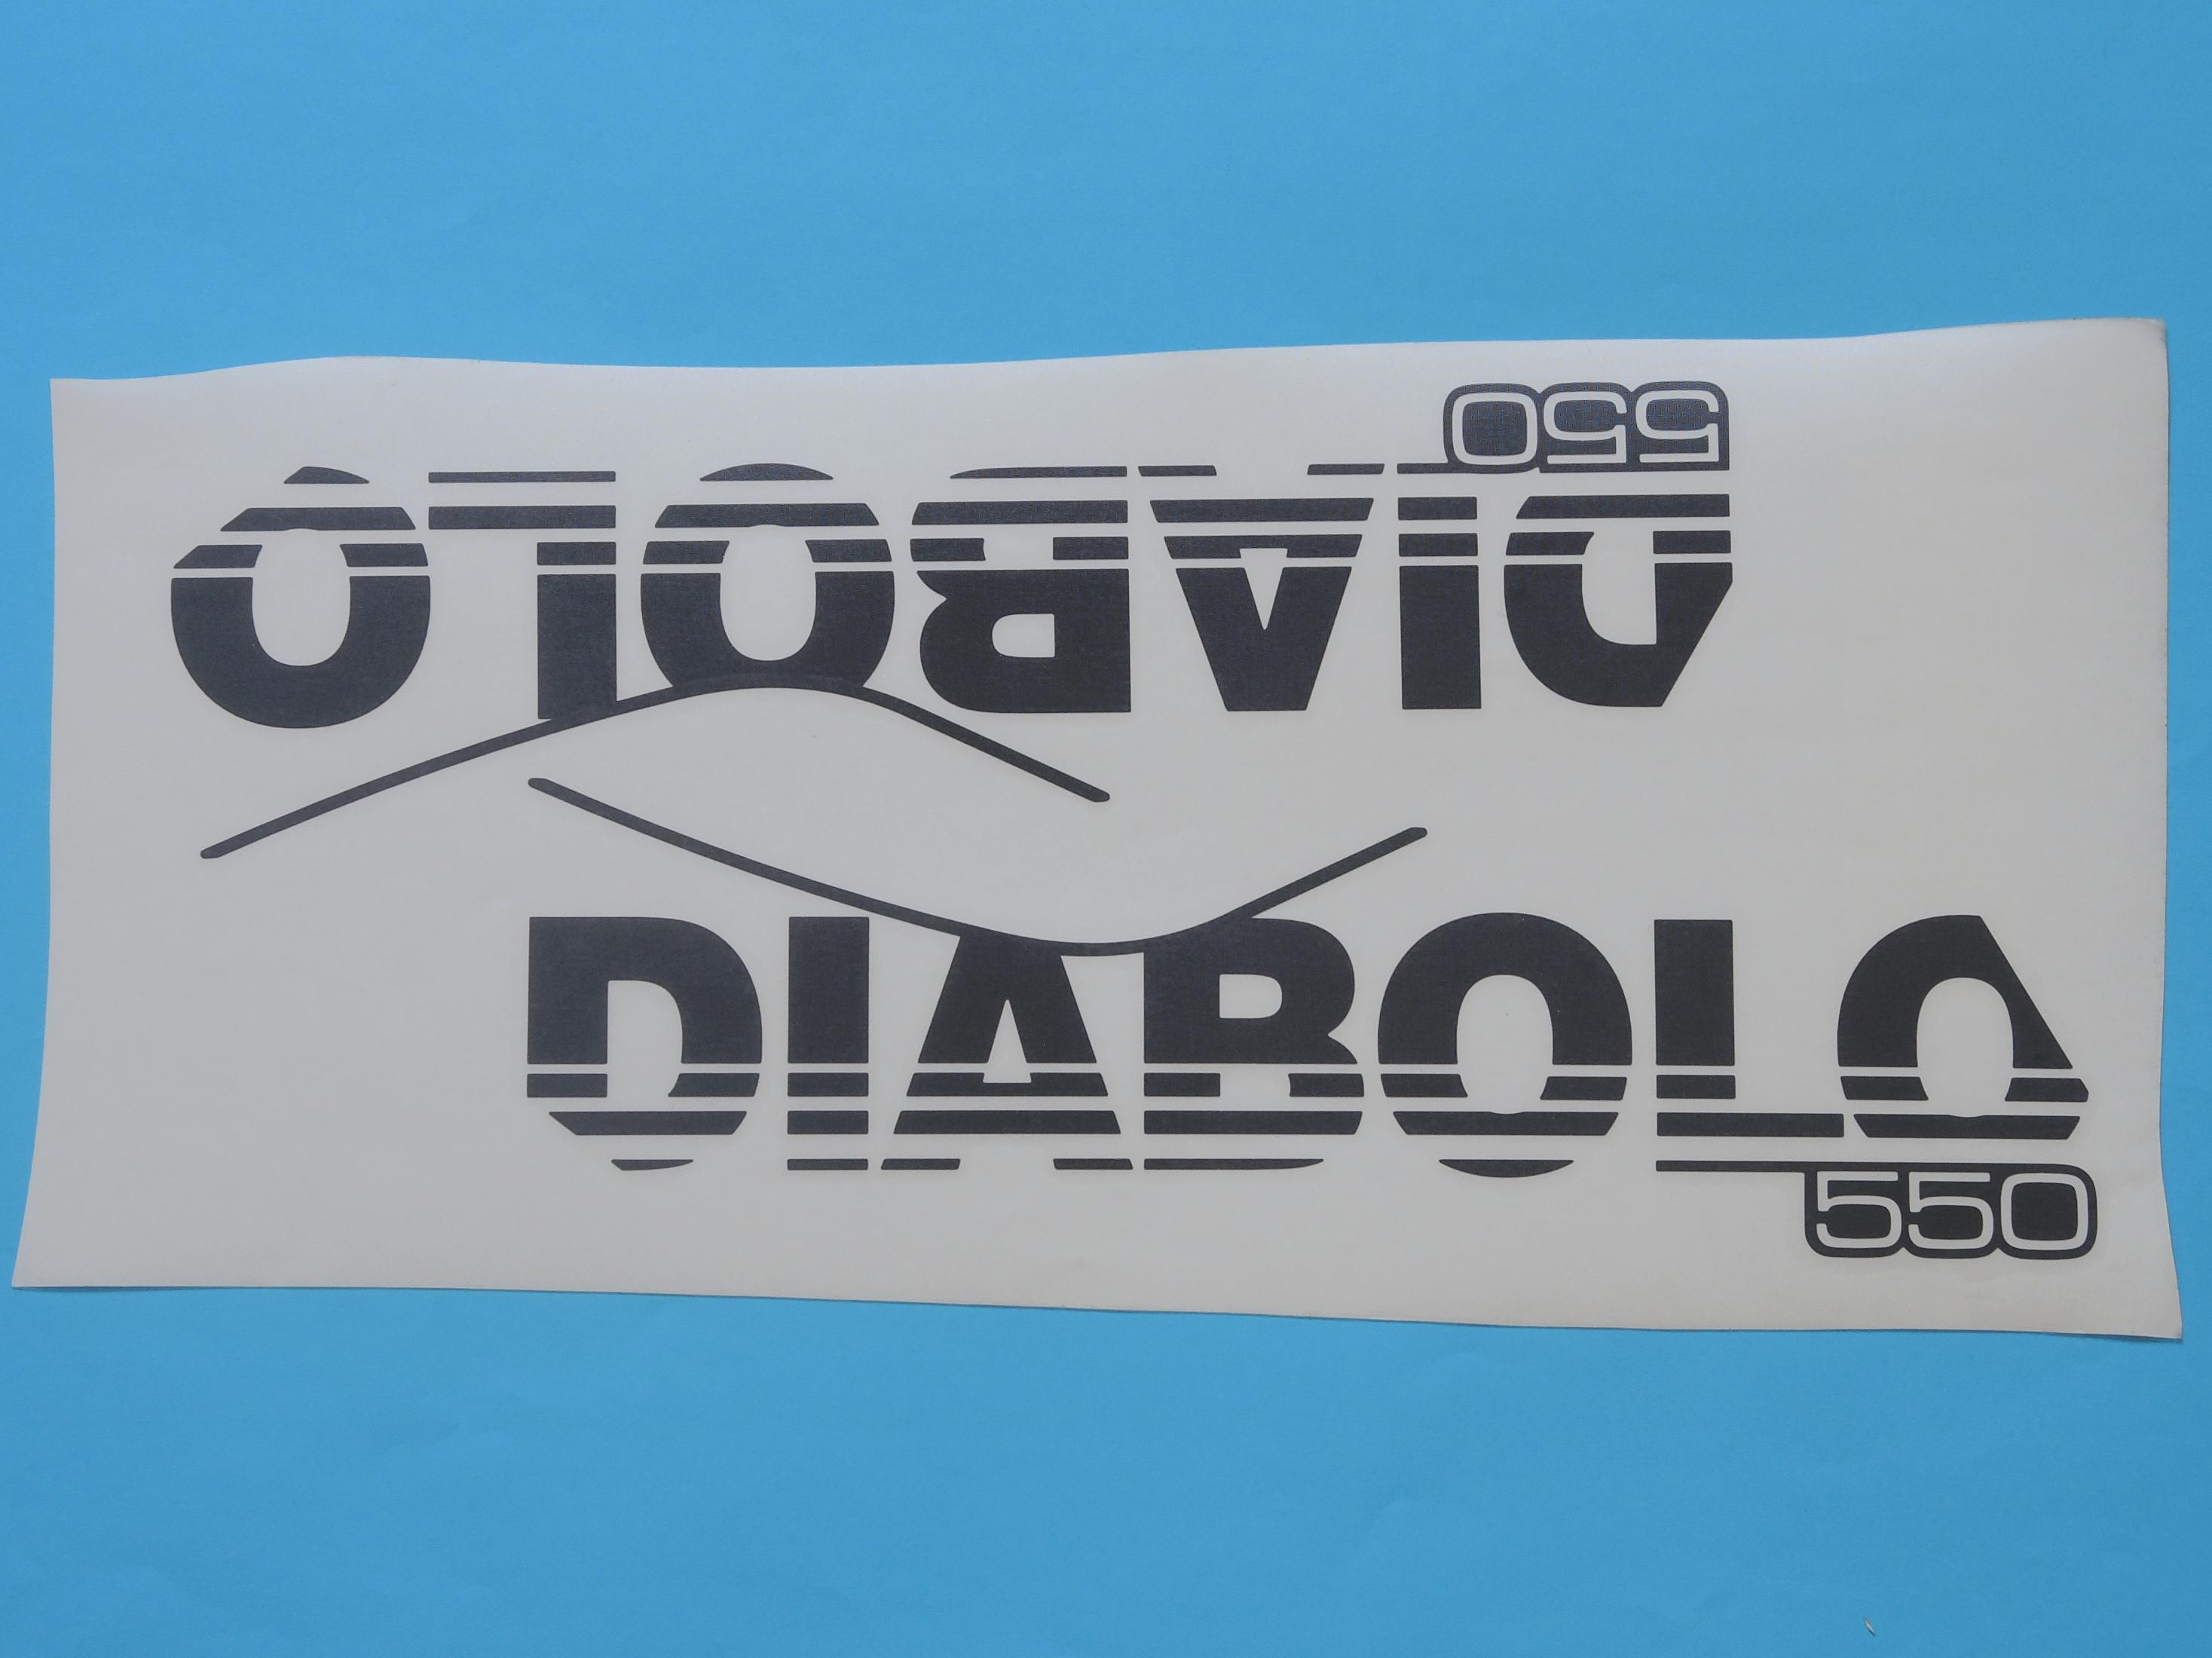 decal "Diabolo 550"